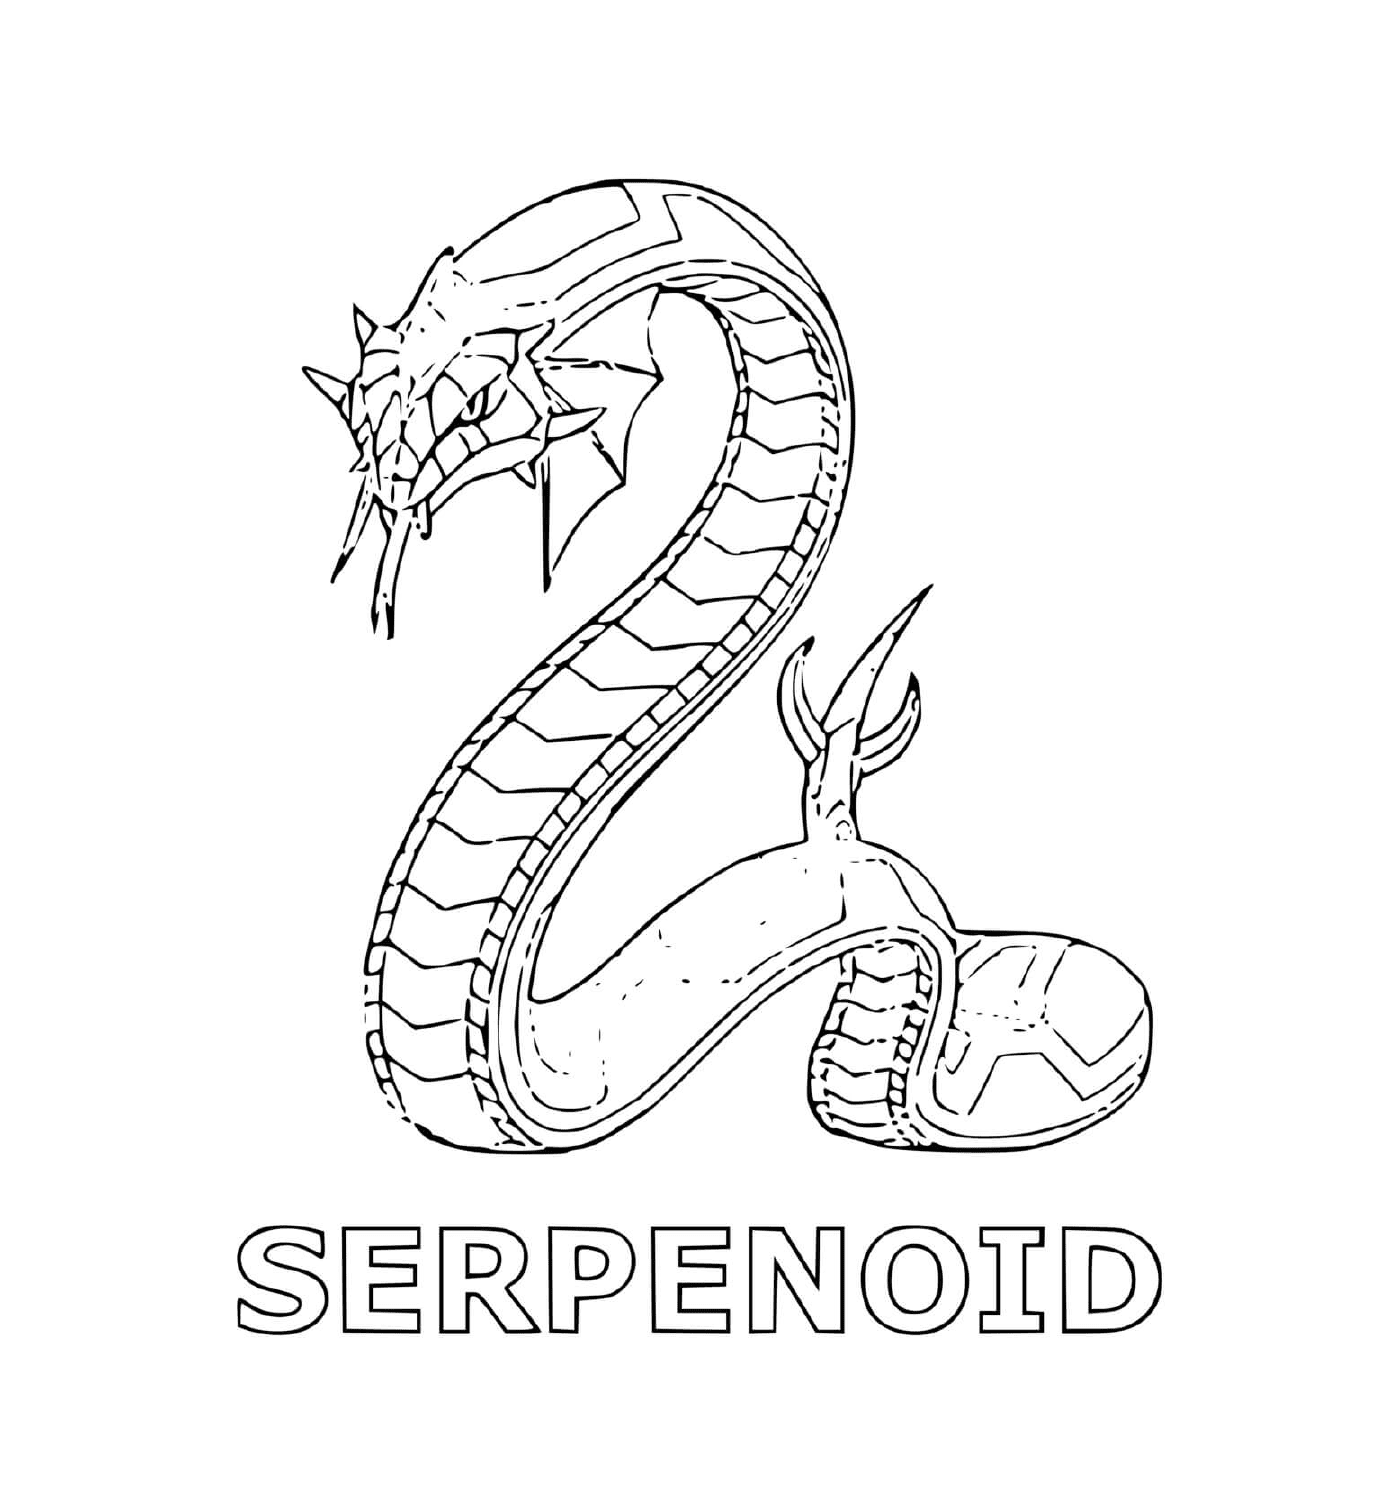  eine Schlange mit dem Wort serpenoid darunter 